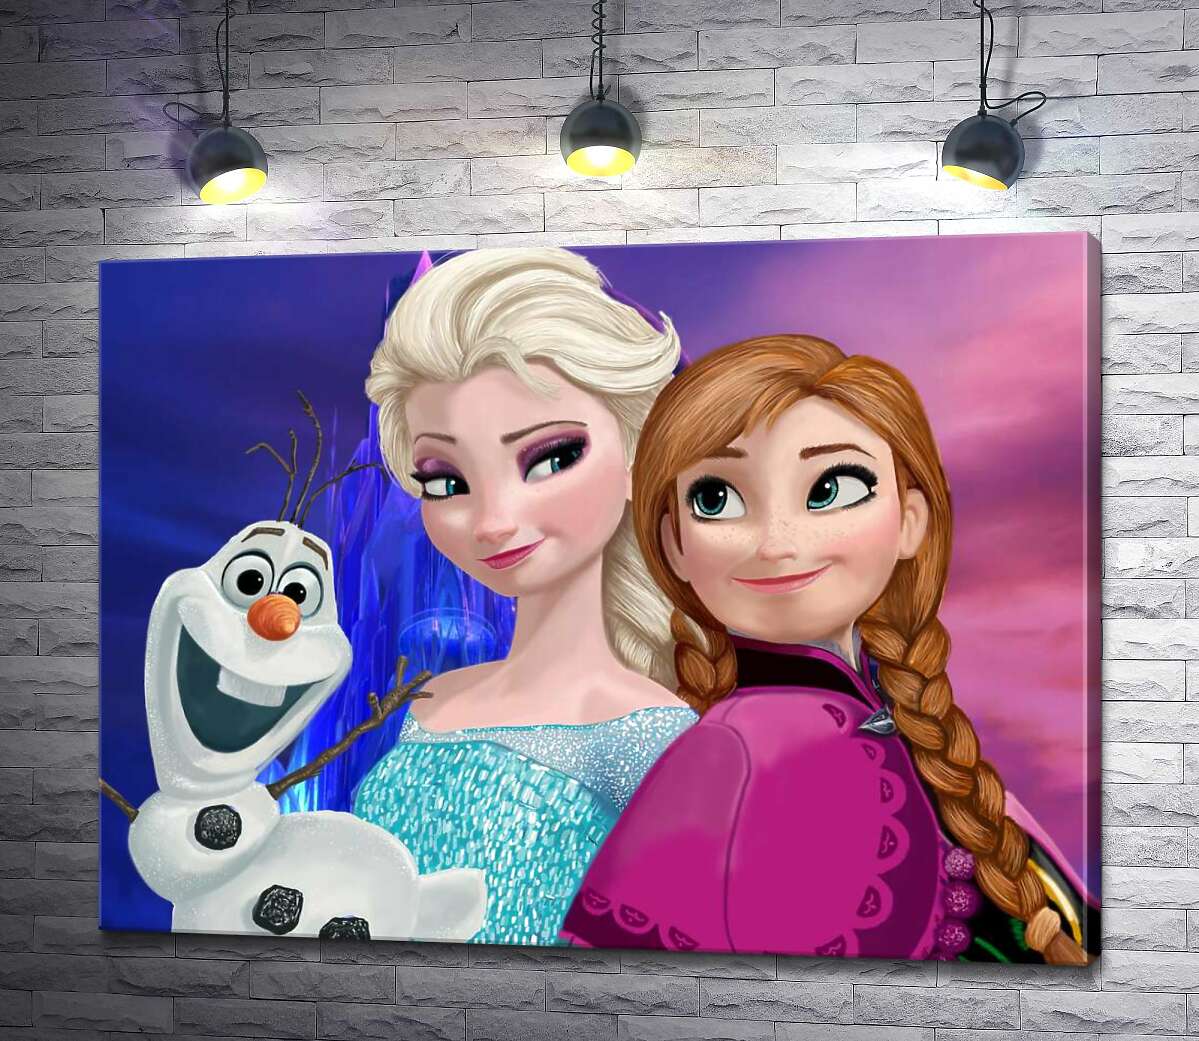 картина Сестры Анна, Эльза и забавный снеговик Олаф – герои мультфильма "Холодное сердце" (Frozen)